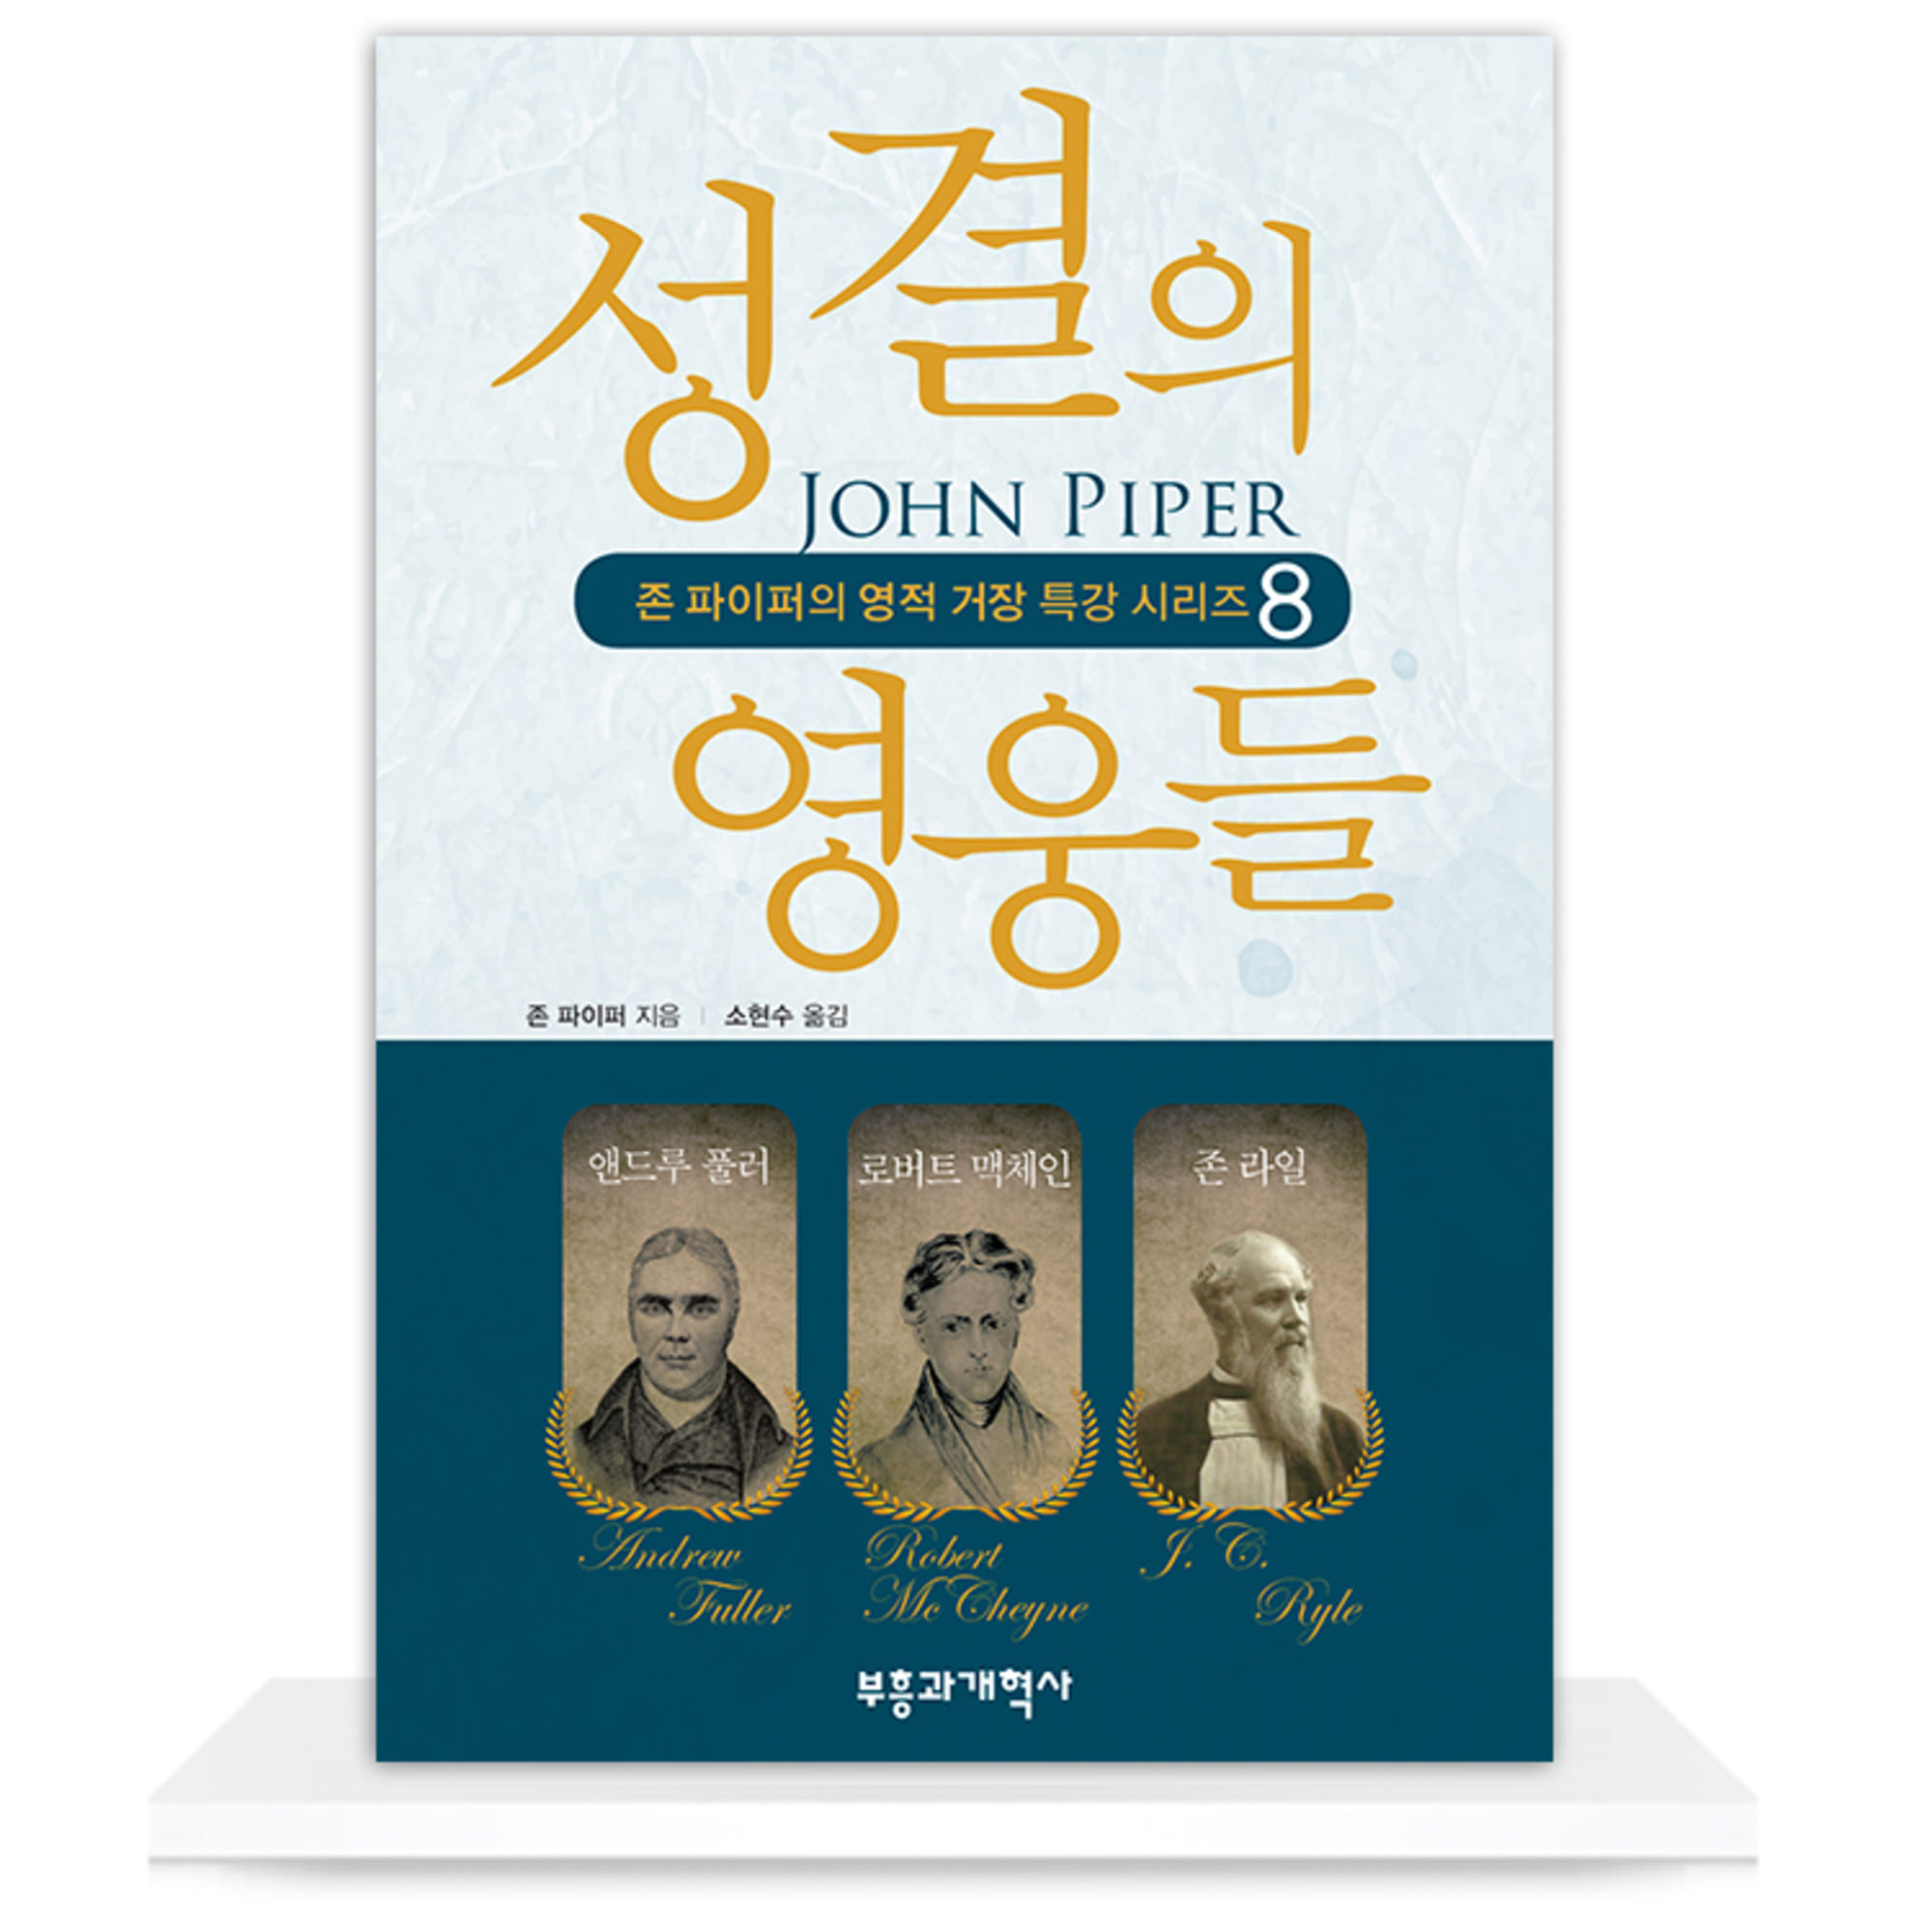 성결의 영웅들 - 존 파이퍼의 영적 거장 특강 시리즈 8